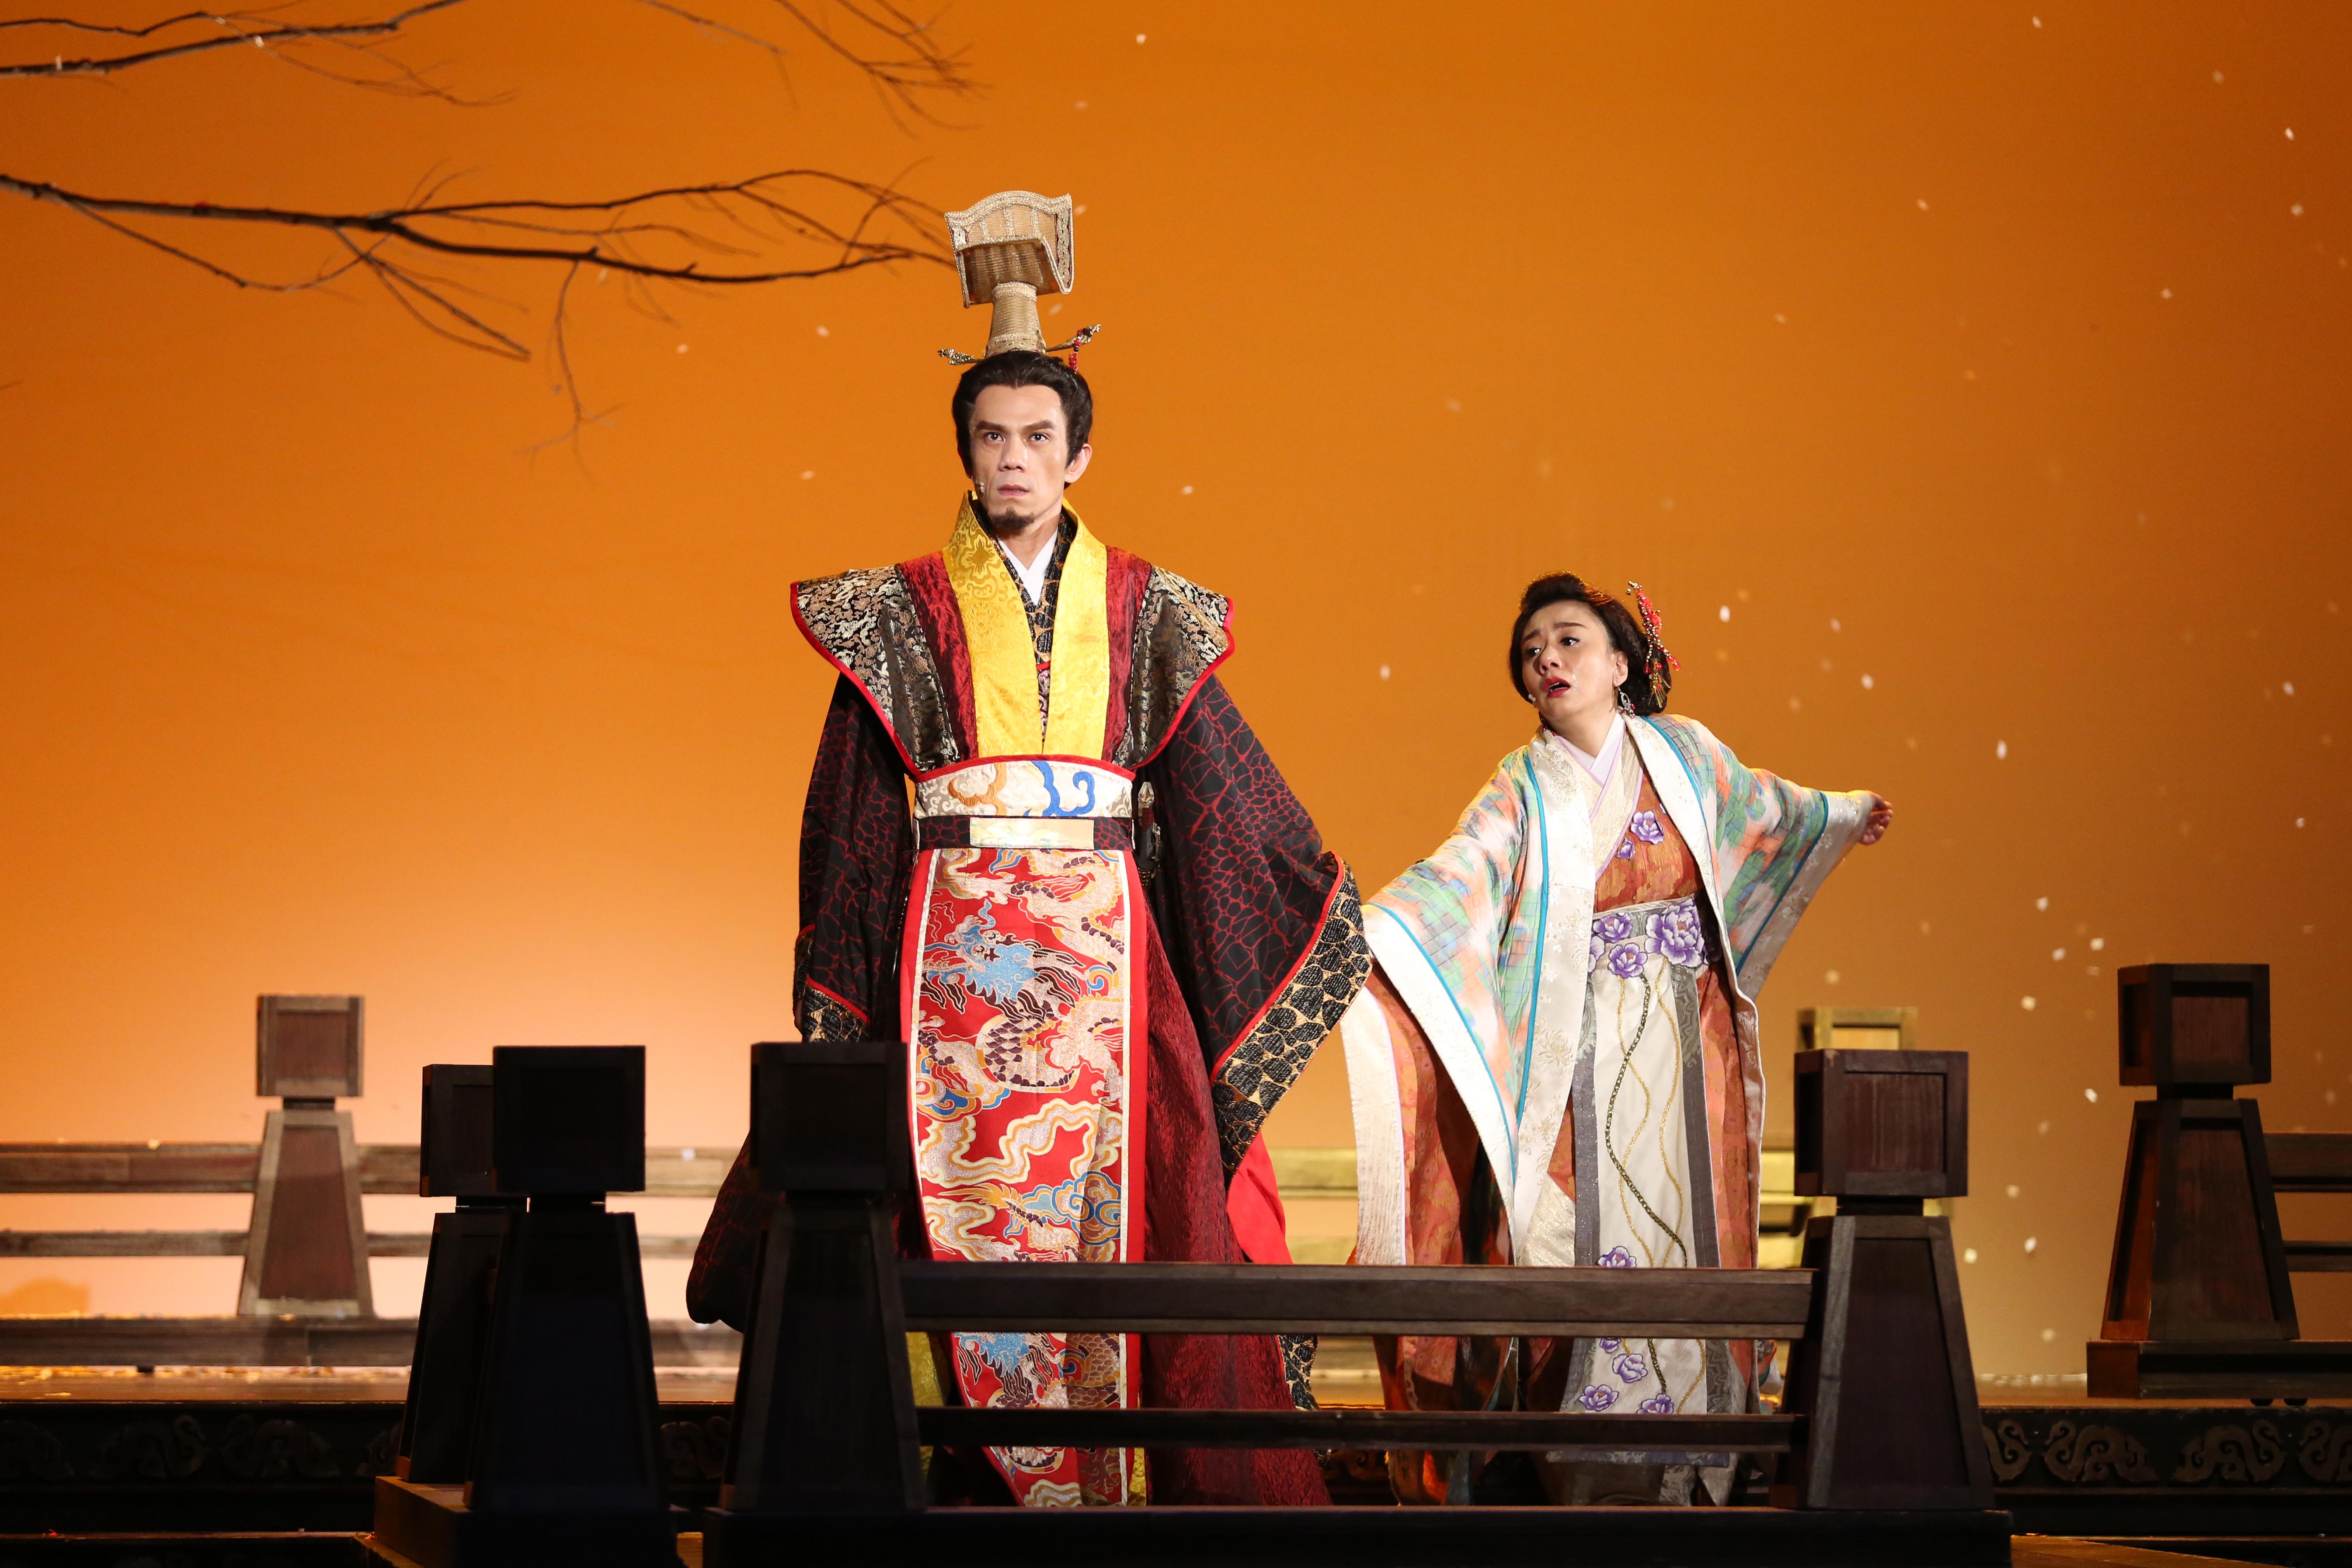 劇中飾演吳王夫差的凱爾與東施高慧君有精彩對戲。全民大劇團